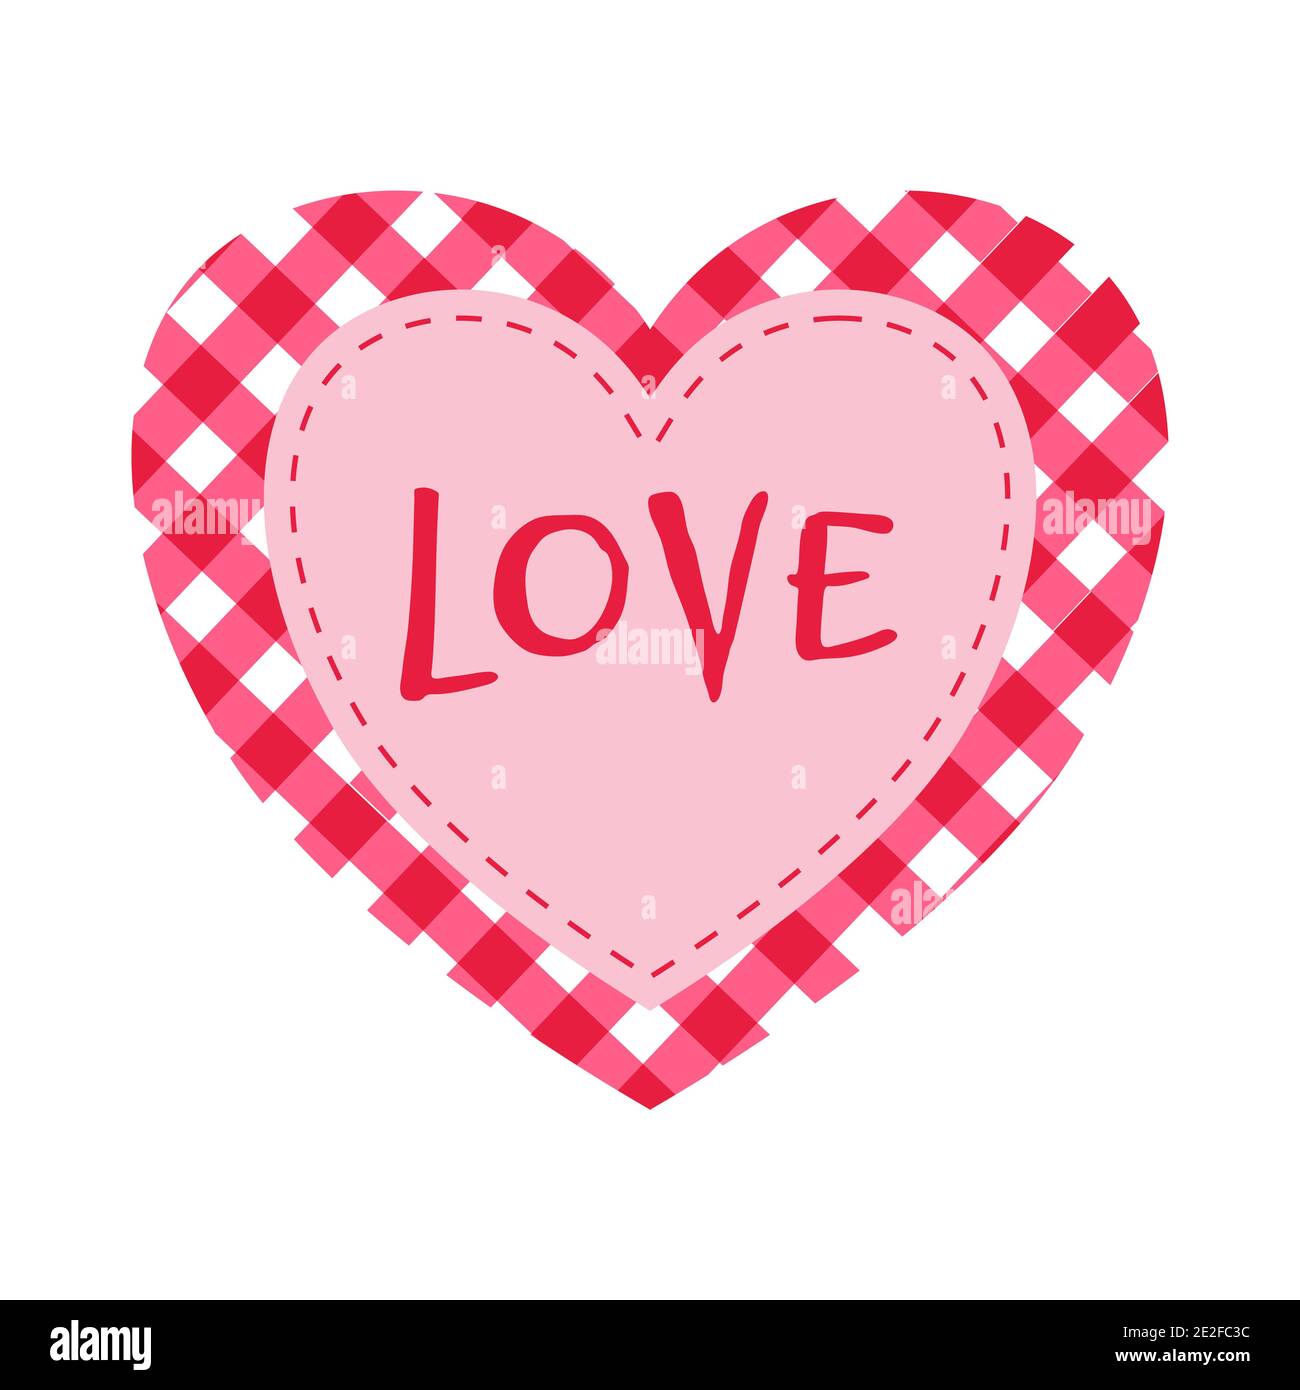 Cuore rosso a scacchi per San Valentino con l'iscrizione Amore, isolato su sfondo bianco. Immagine piatta vettoriale. Illustrazione Vettoriale